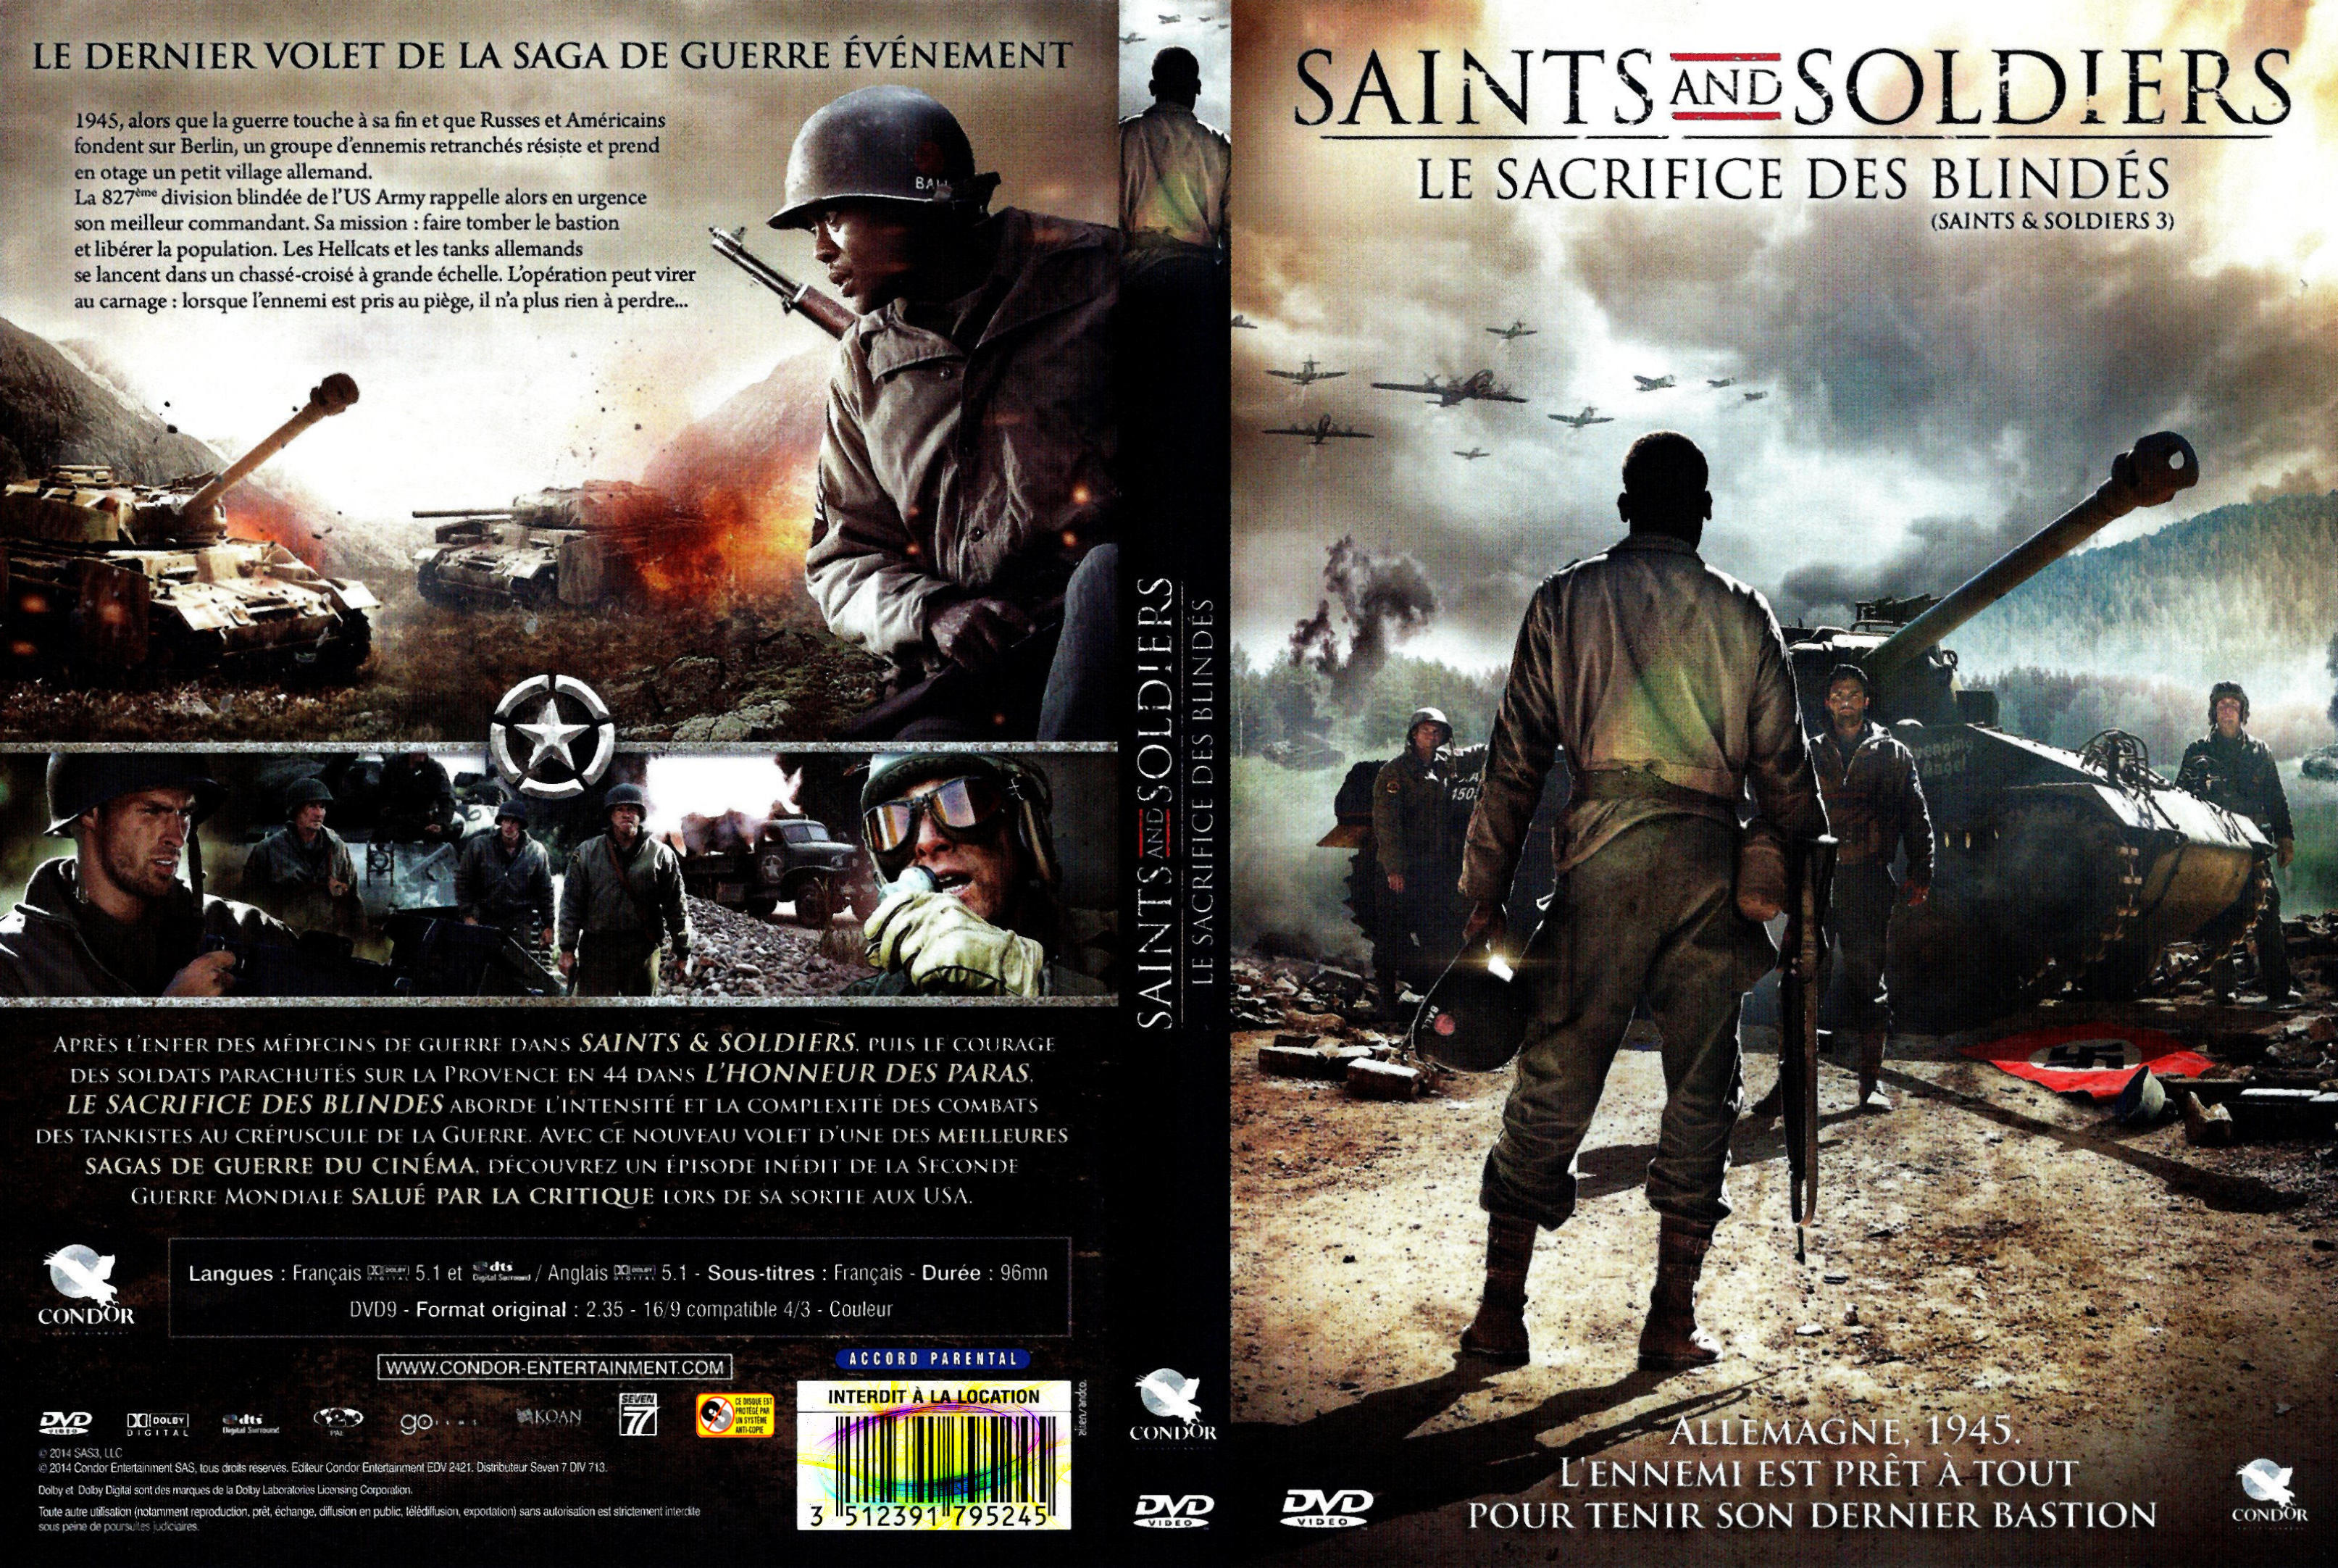 Jaquette DVD Saint and soldiers le sacrifice des blinds